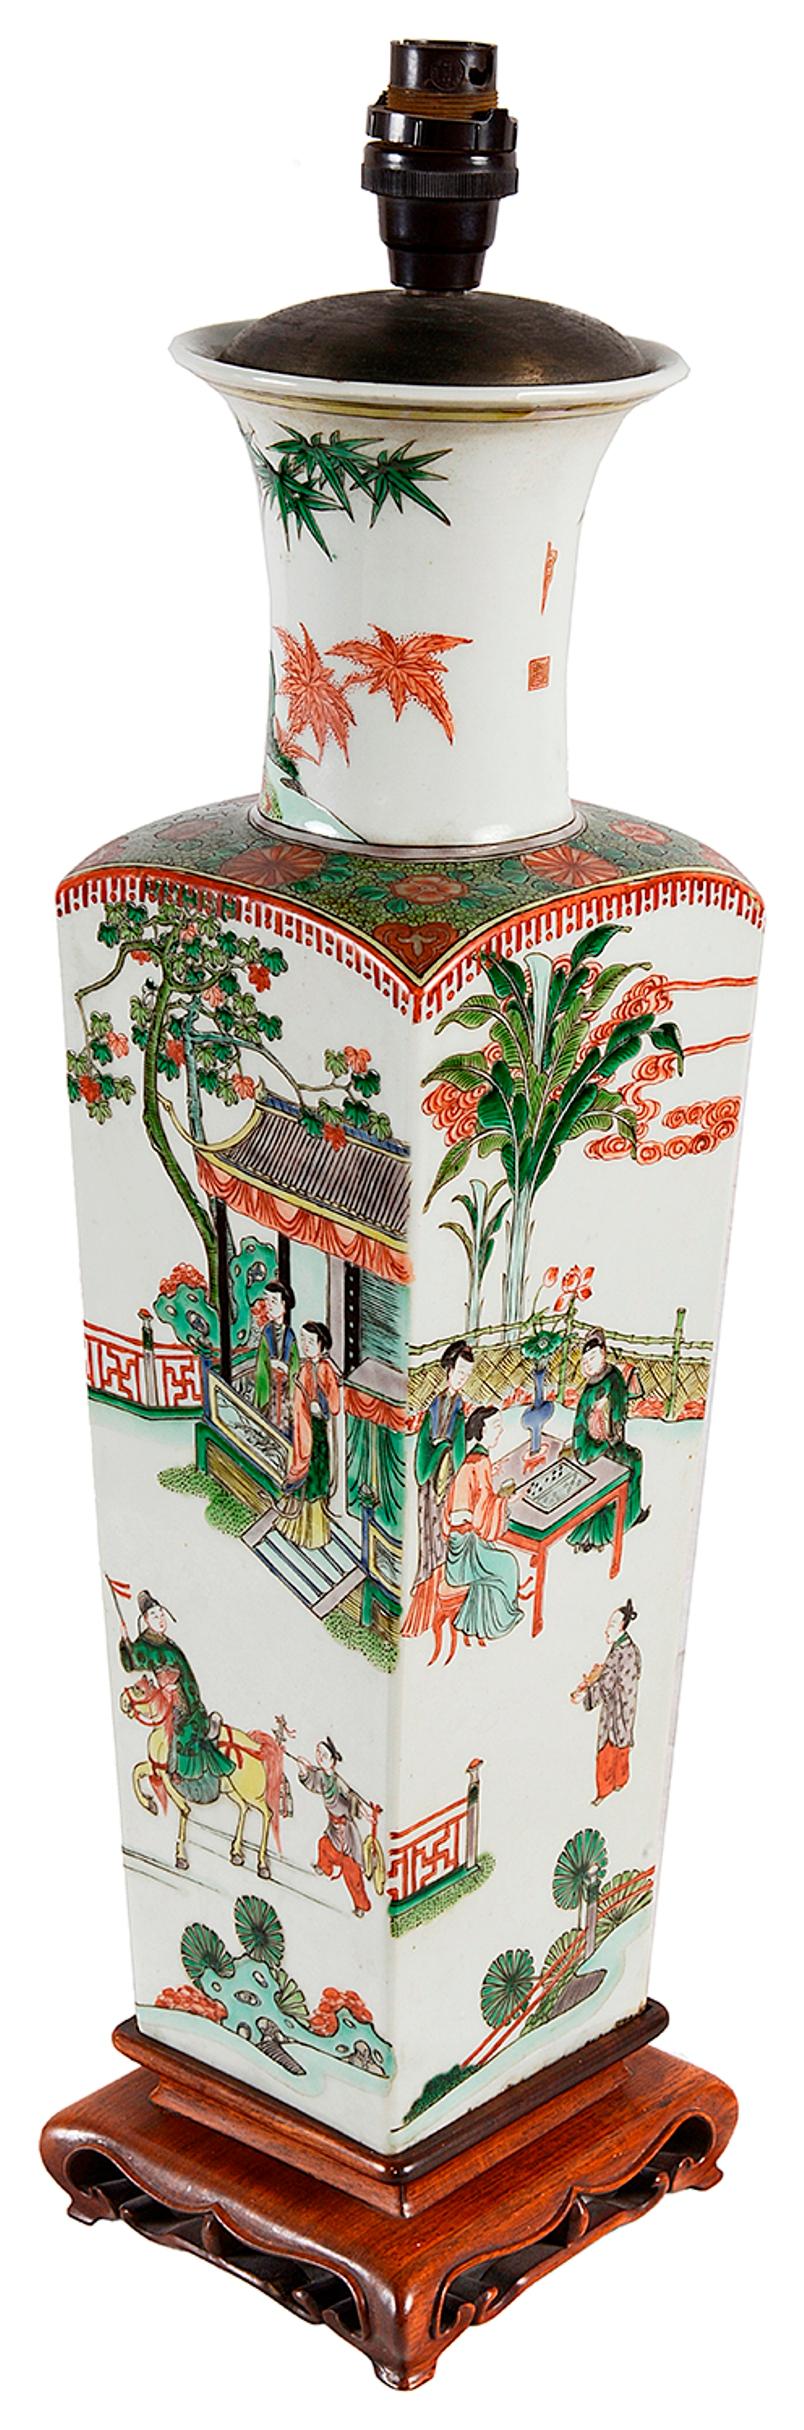 Vase / lampe de la Famille verte chinoise de très bonne qualité, datant du 18e siècle. Scènes classiques chinoises représentant des courtisans sous des pagodes et dans des jardins, jouant à des jeux et se déplaçant à cheval. Monté sur un socle en